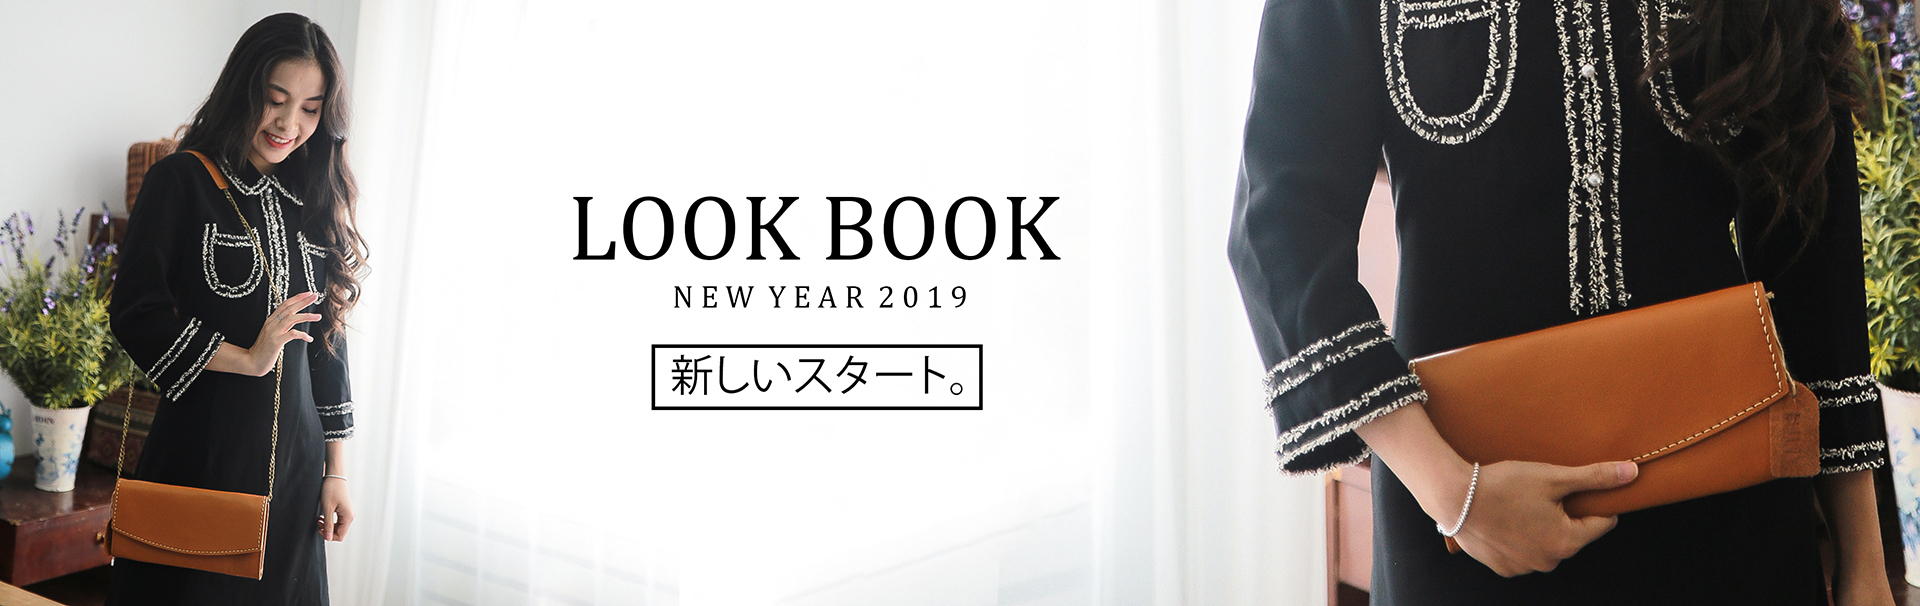 Bộ ảnh Look Book chào năm mới 2019